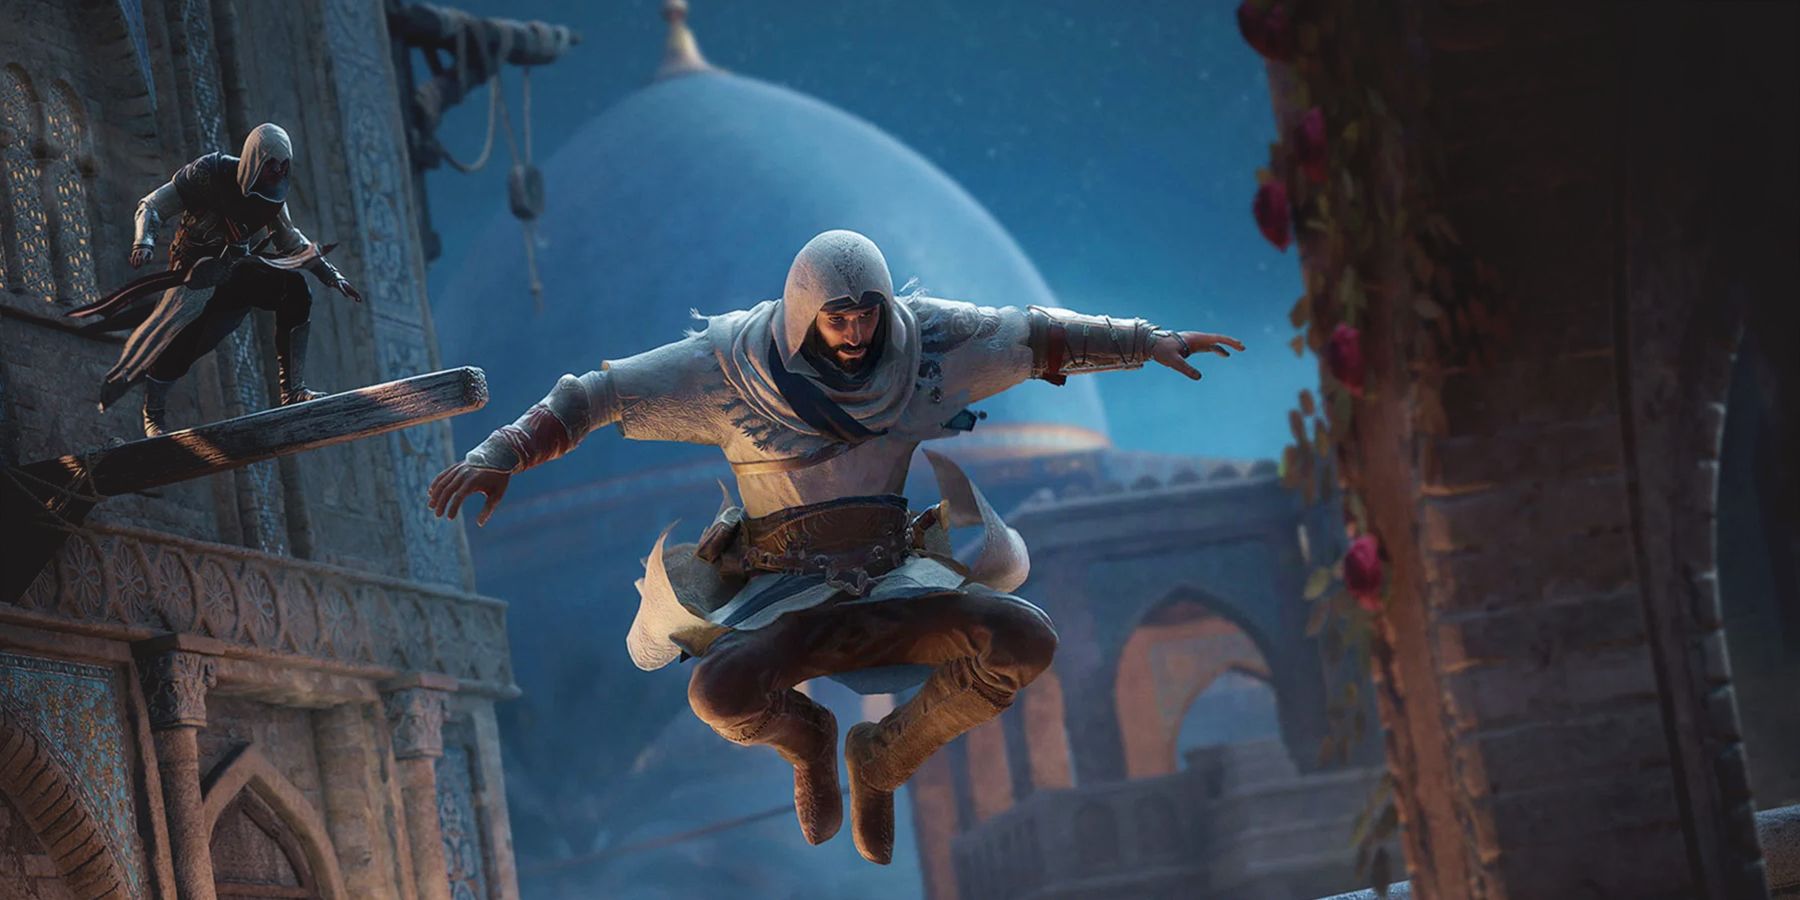 Assassin's Creed Mirage Basim mid-jump at night Baghdad promo screenshot